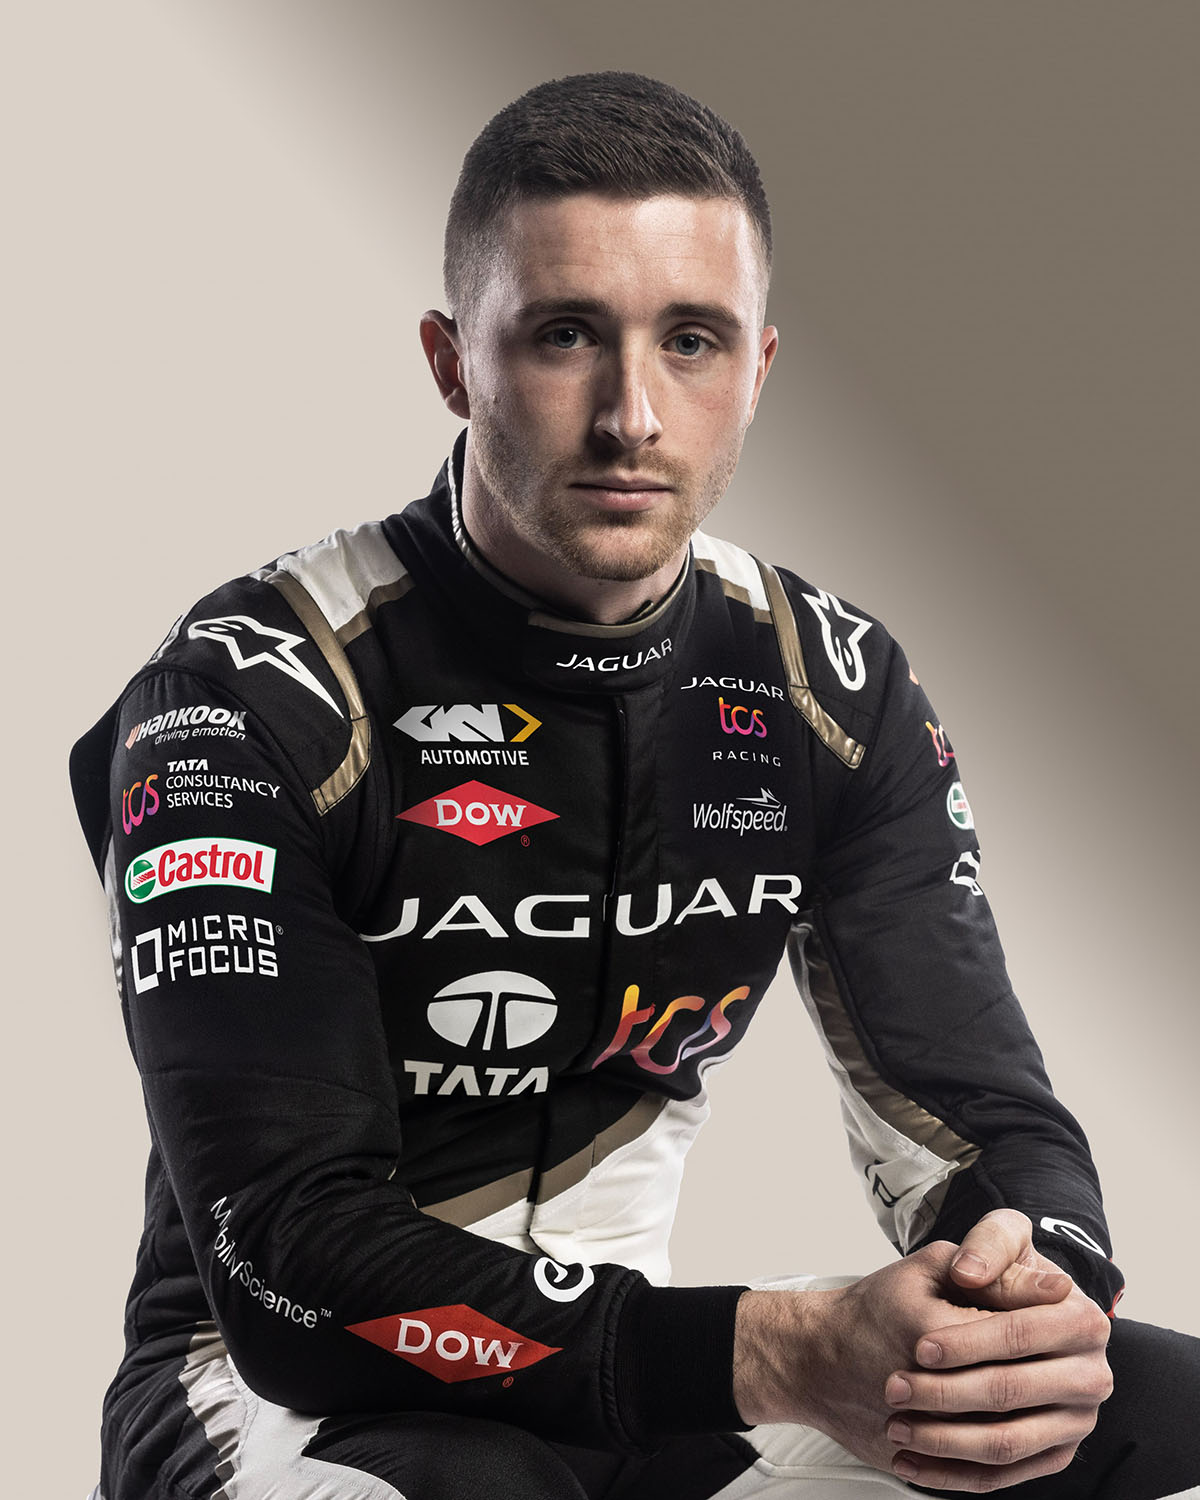 JaguarTCS Racing 3